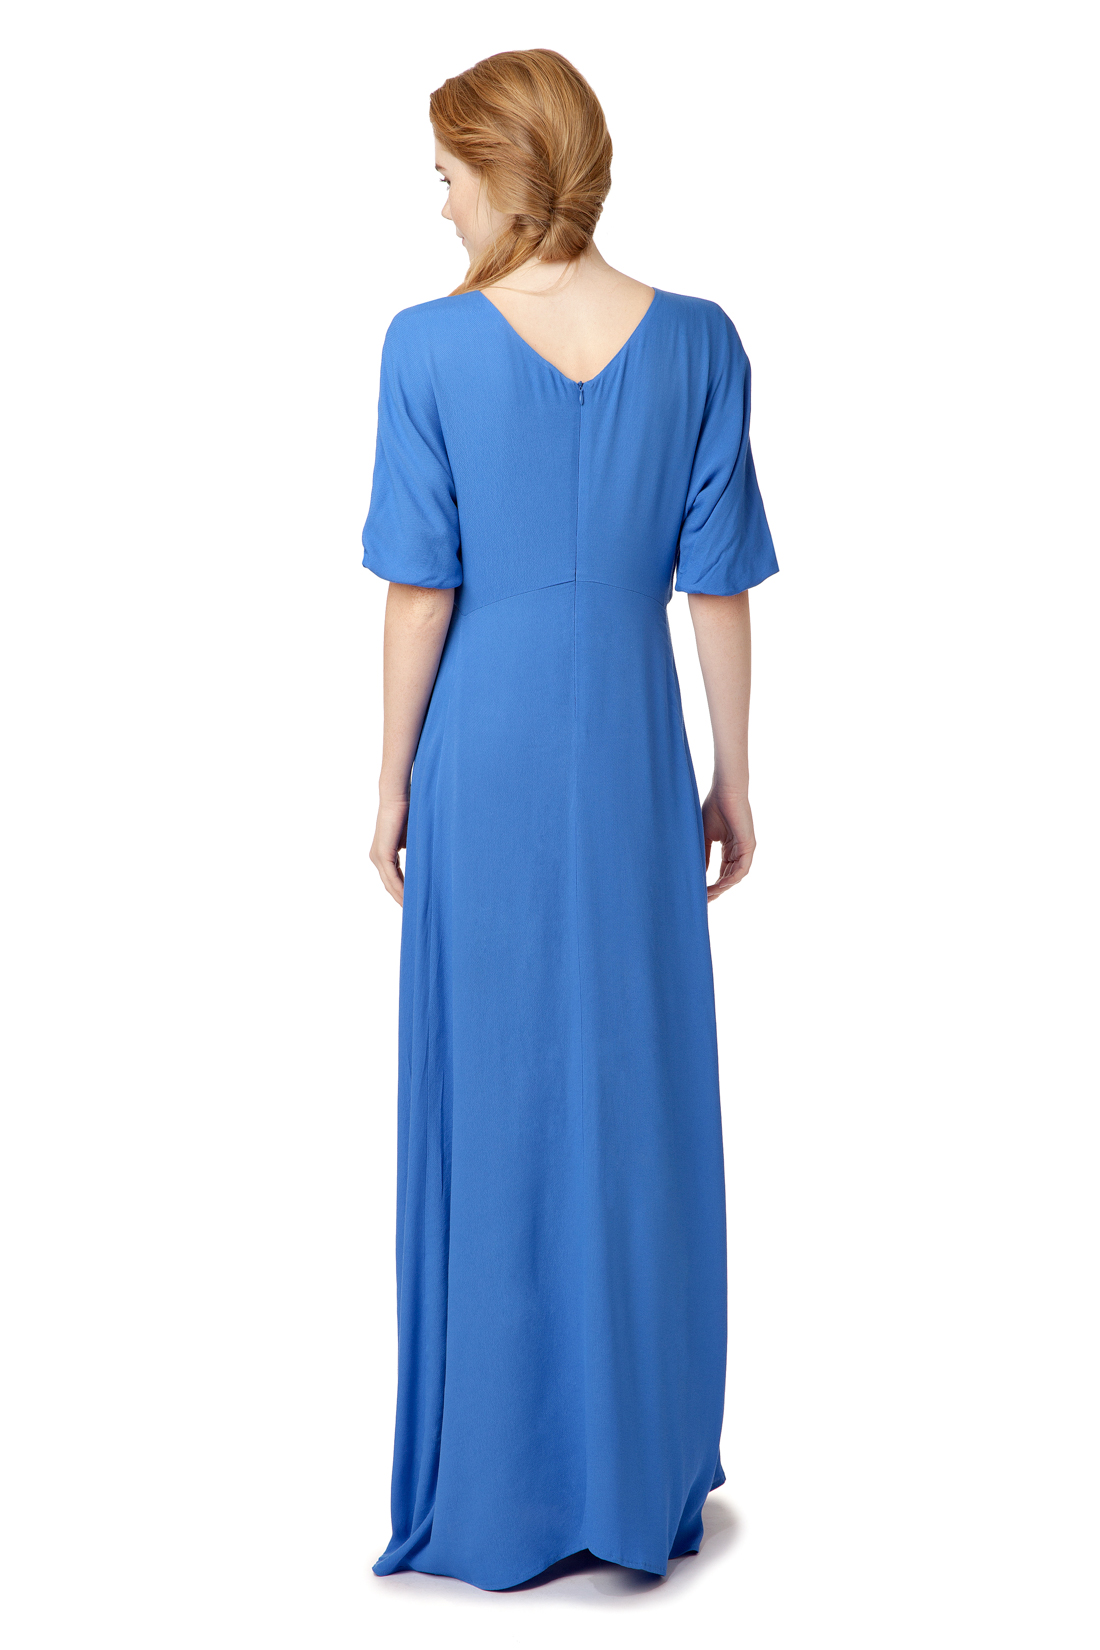 Платье с вырезом на спине (арт. baon B457025), размер S, цвет синий Платье с вырезом на спине (арт. baon B457025) - фото 2